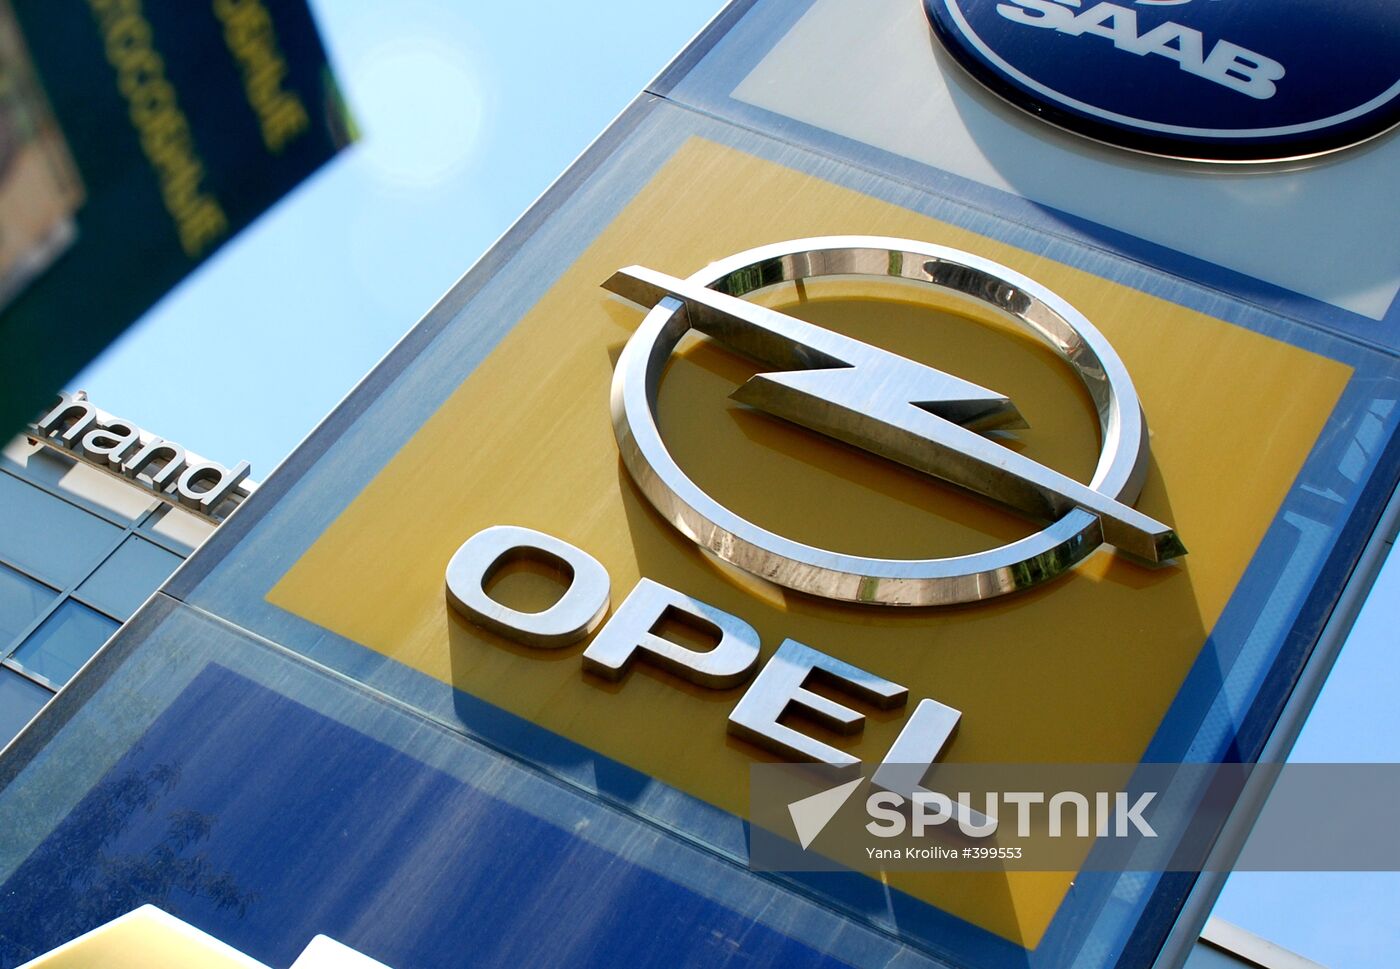 Opel's logo